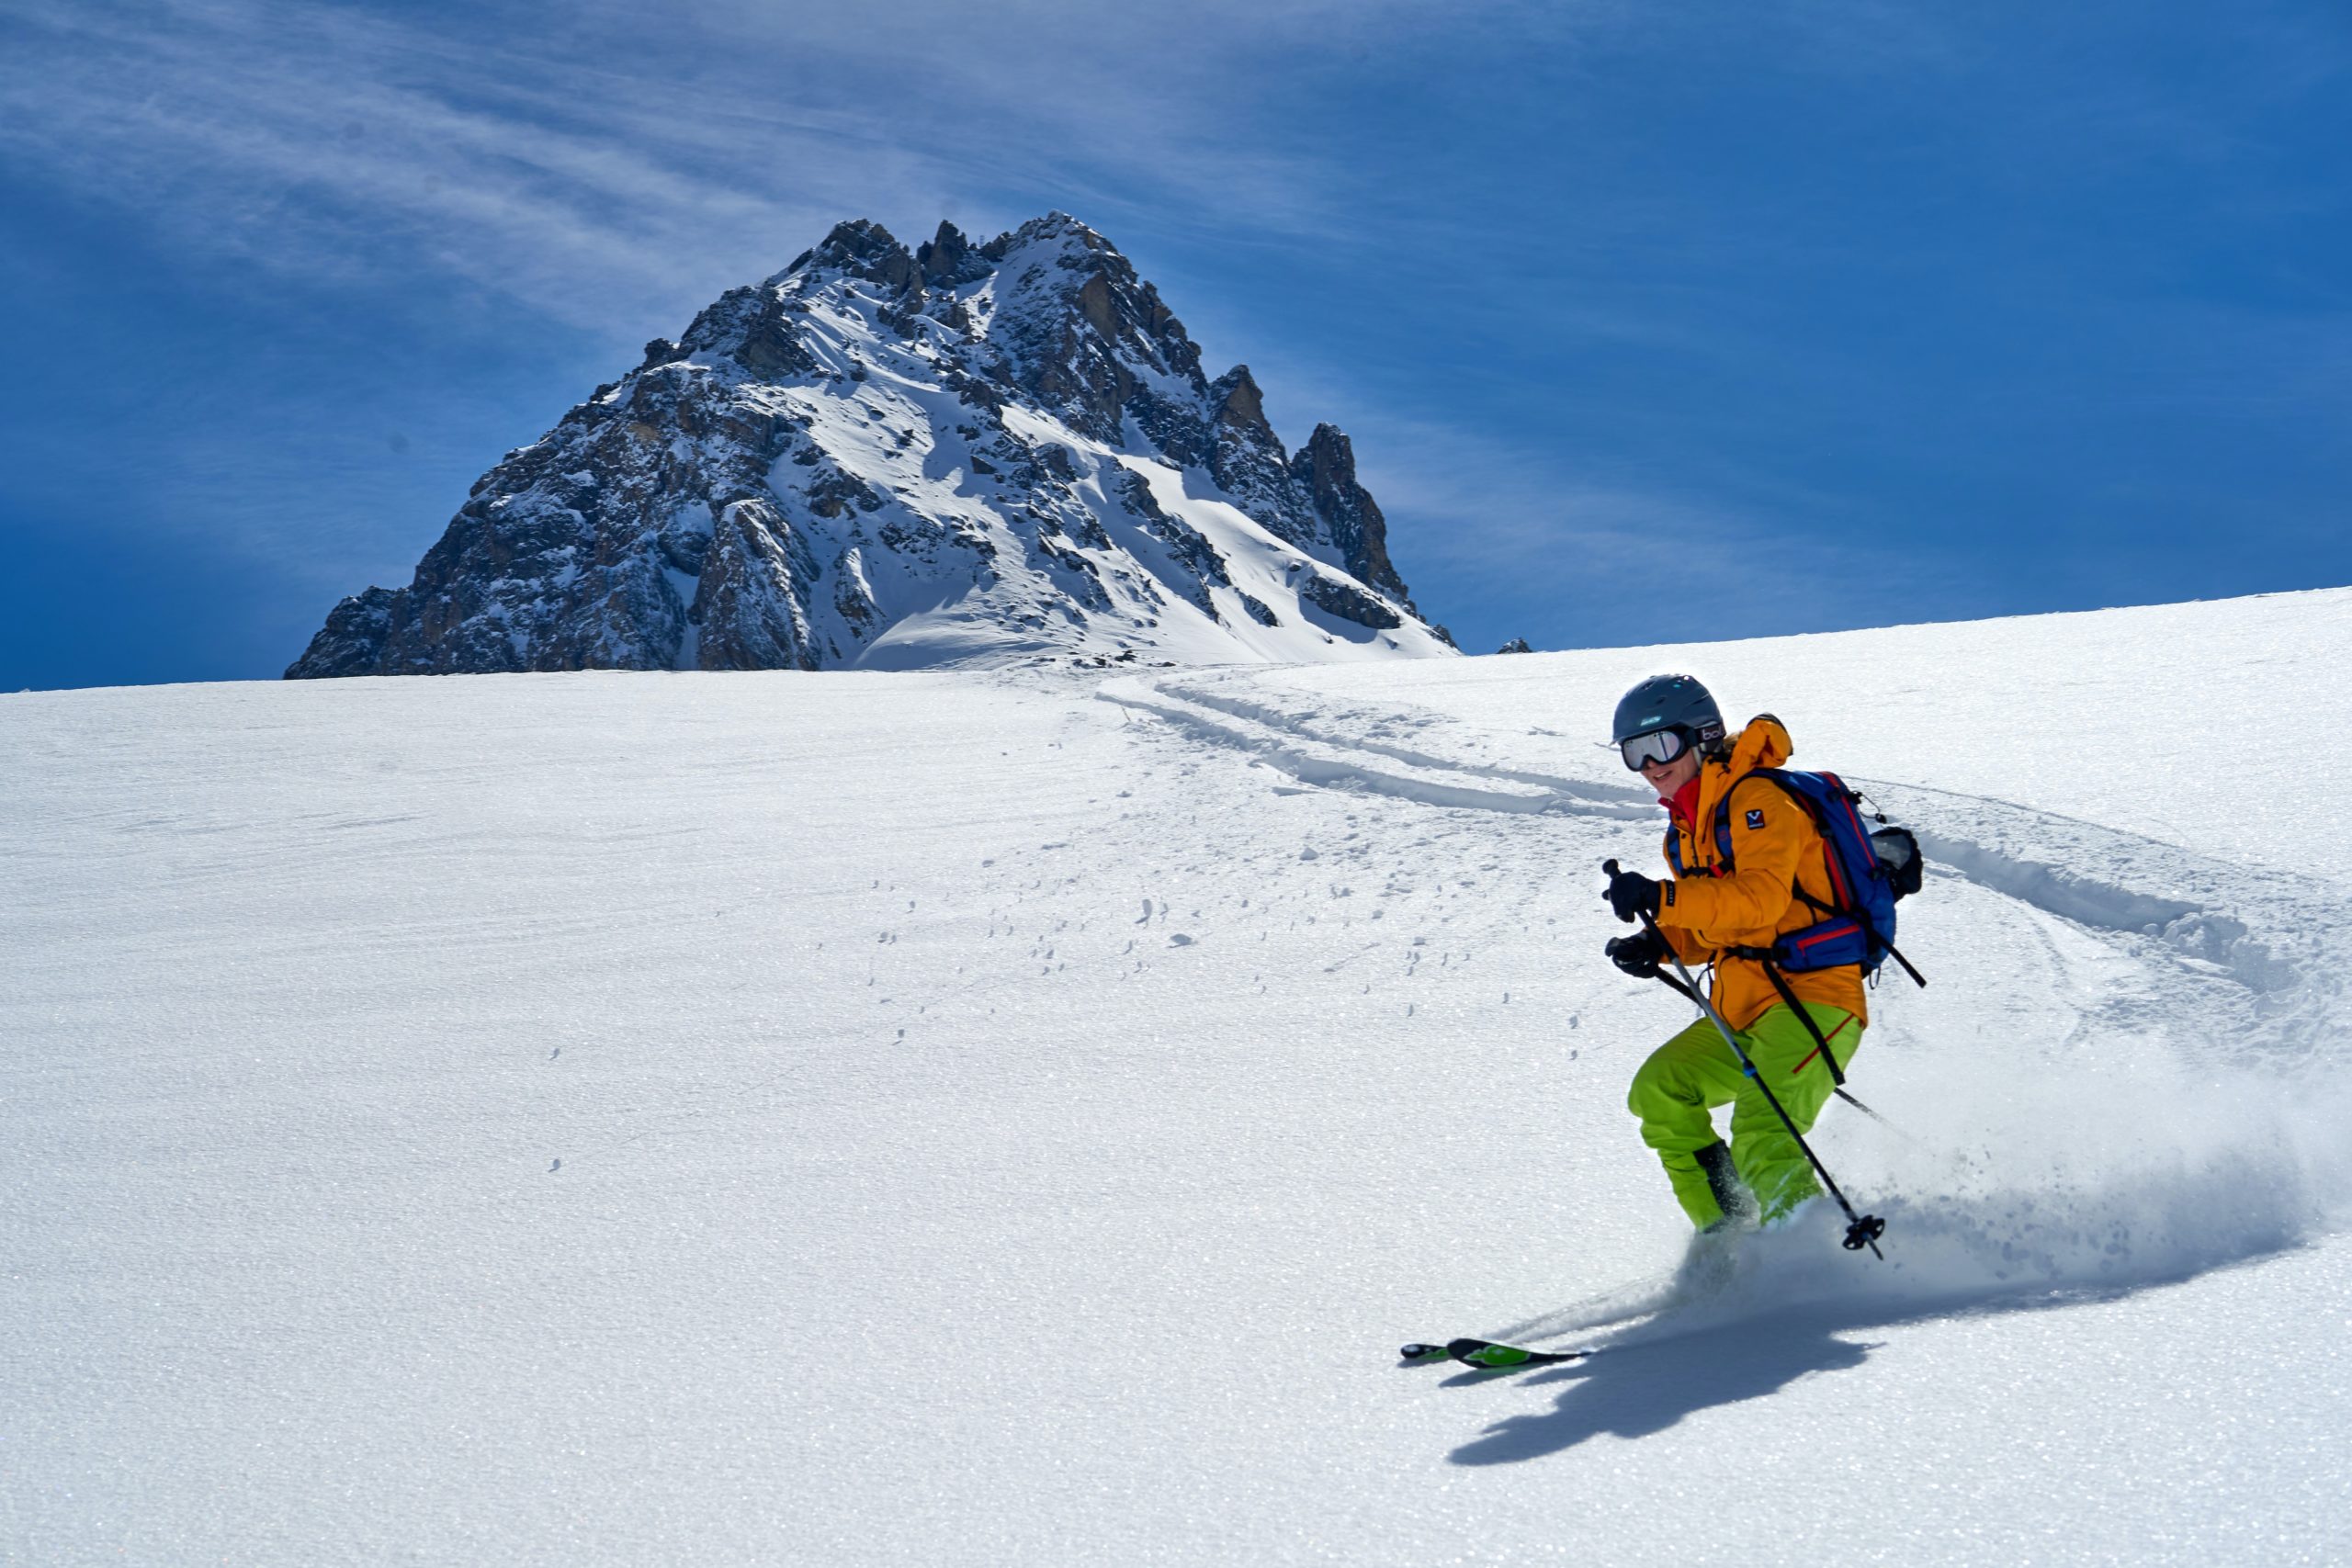 oferta-fin-de-semana-ski-dominio-ski